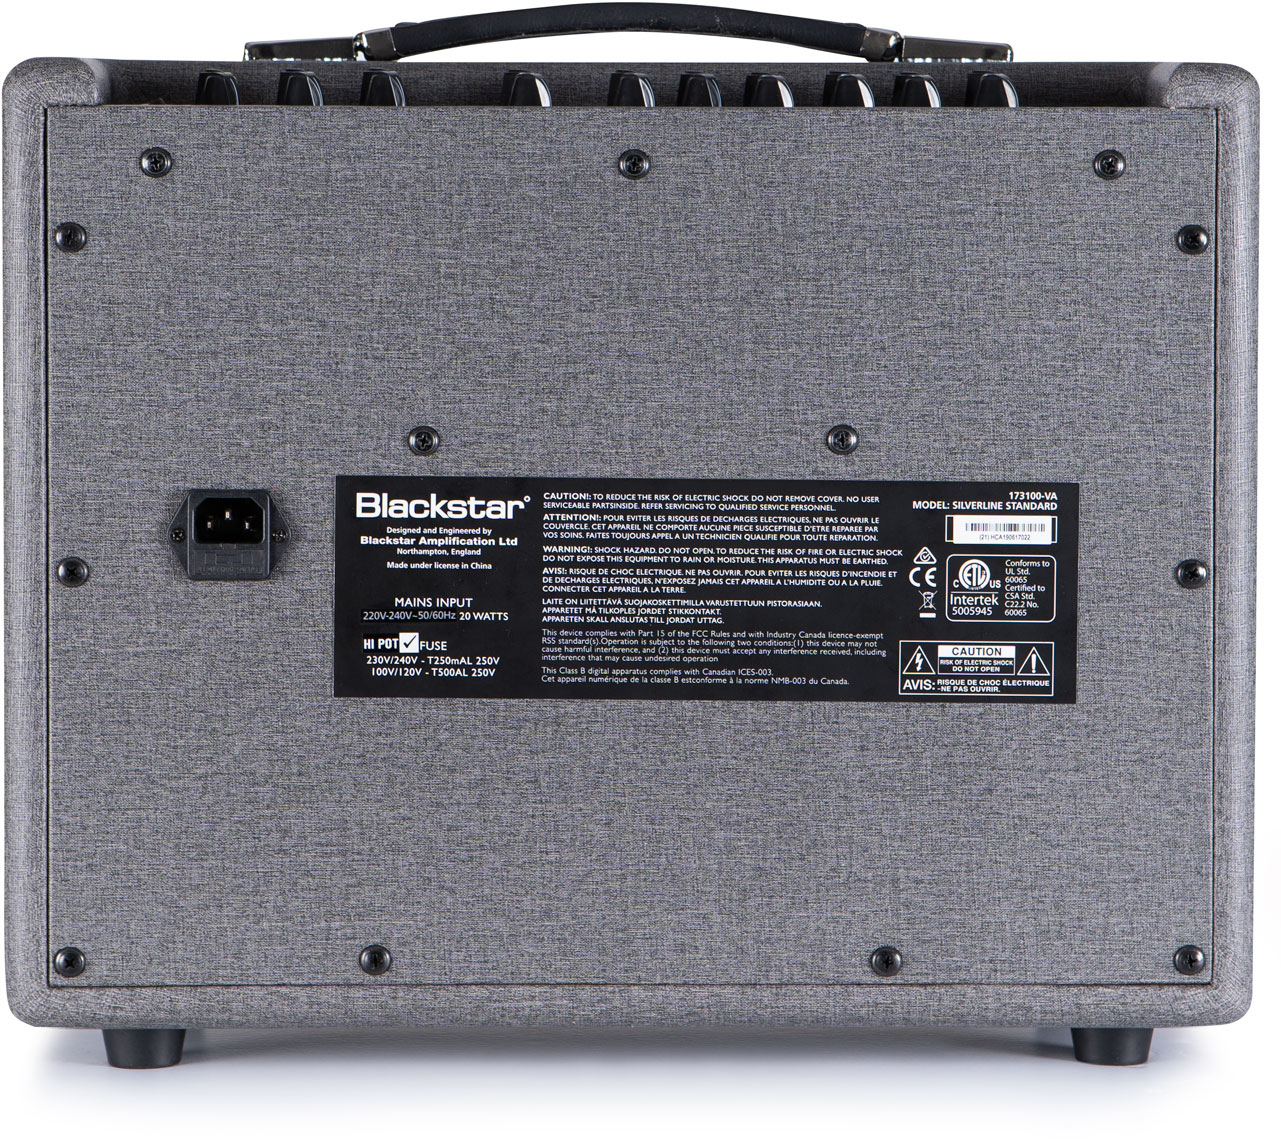 Blackstar Silverline Standard 20w 1x10 - Combo amplificador para guitarra eléctrica - Variation 2